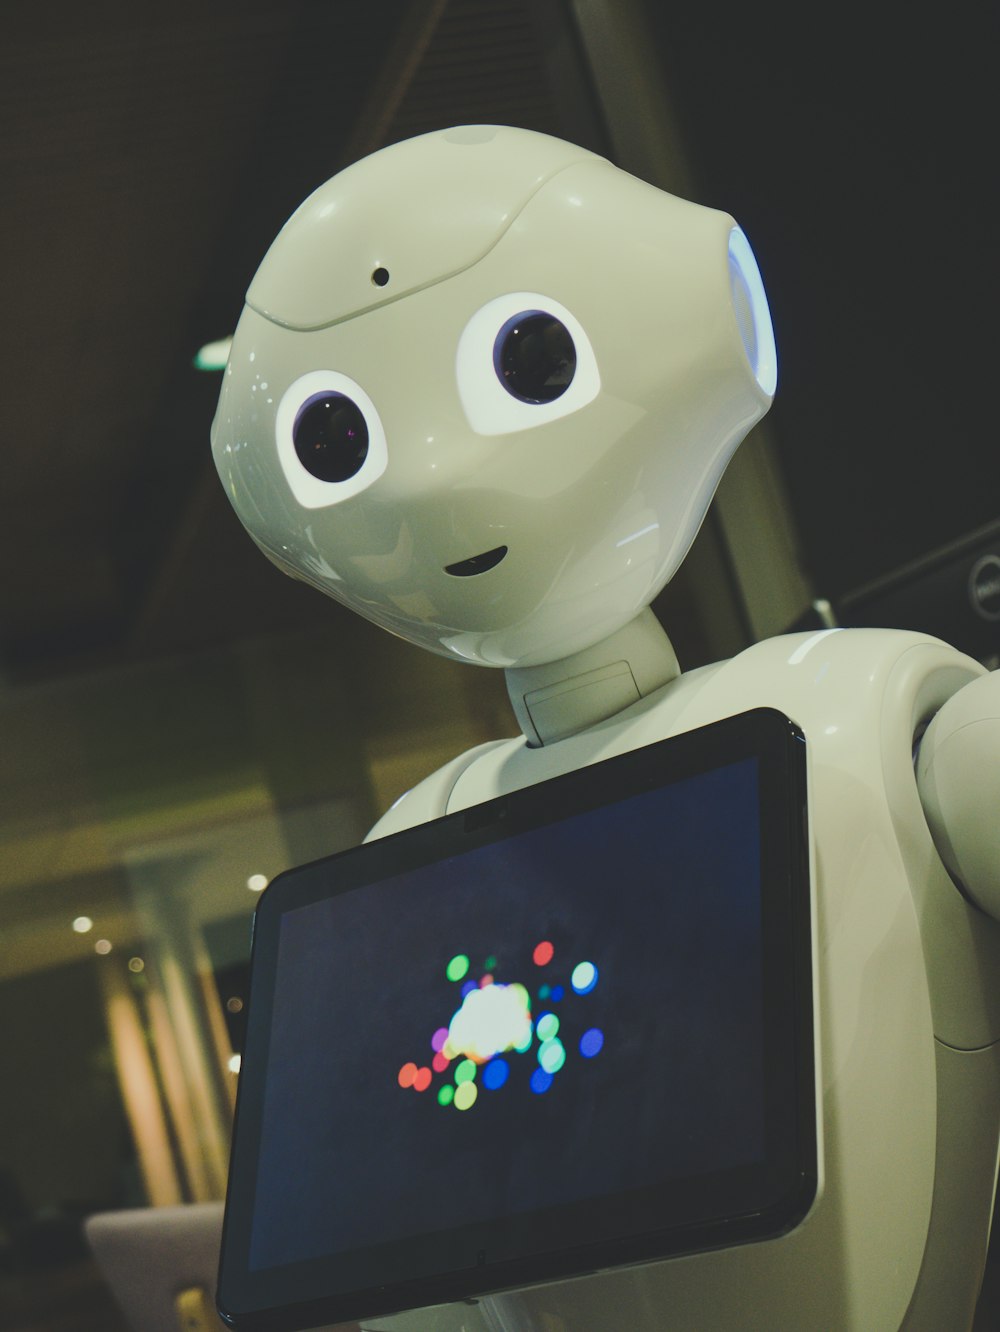 Jouet robot blanc tenant une tablette noire